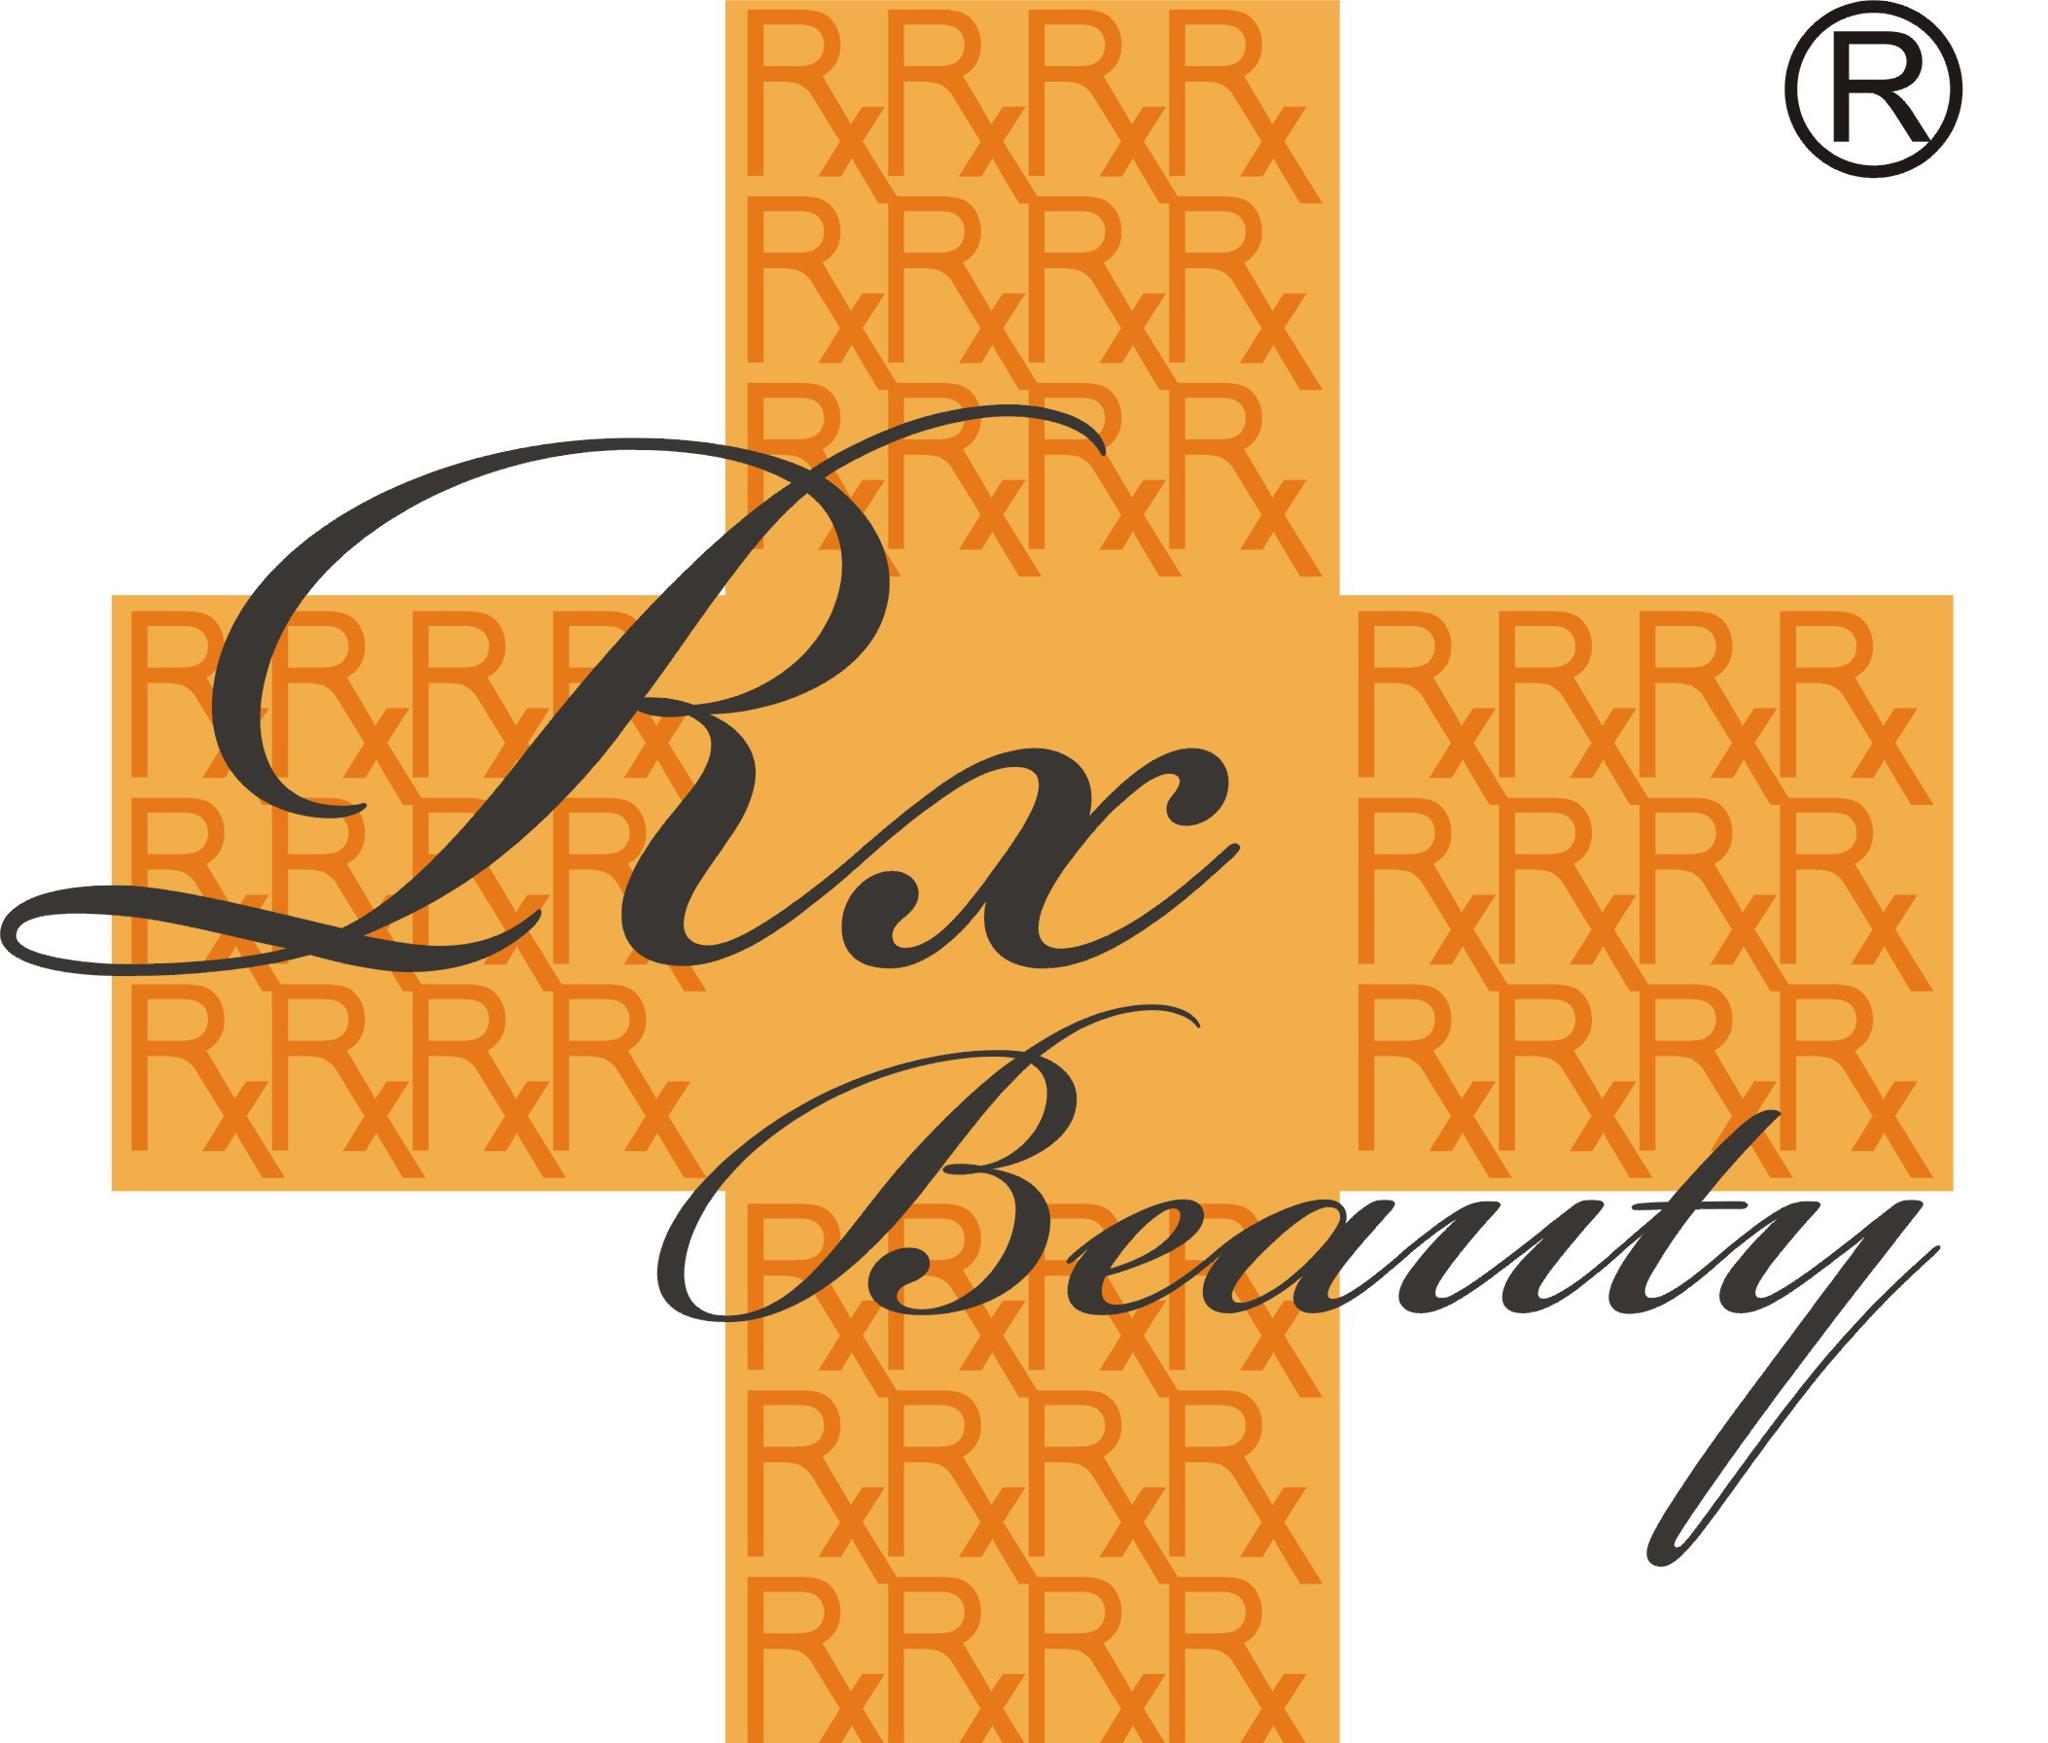 美容院 Beauty Salon: Rx Beauty (銅鑼灣店)